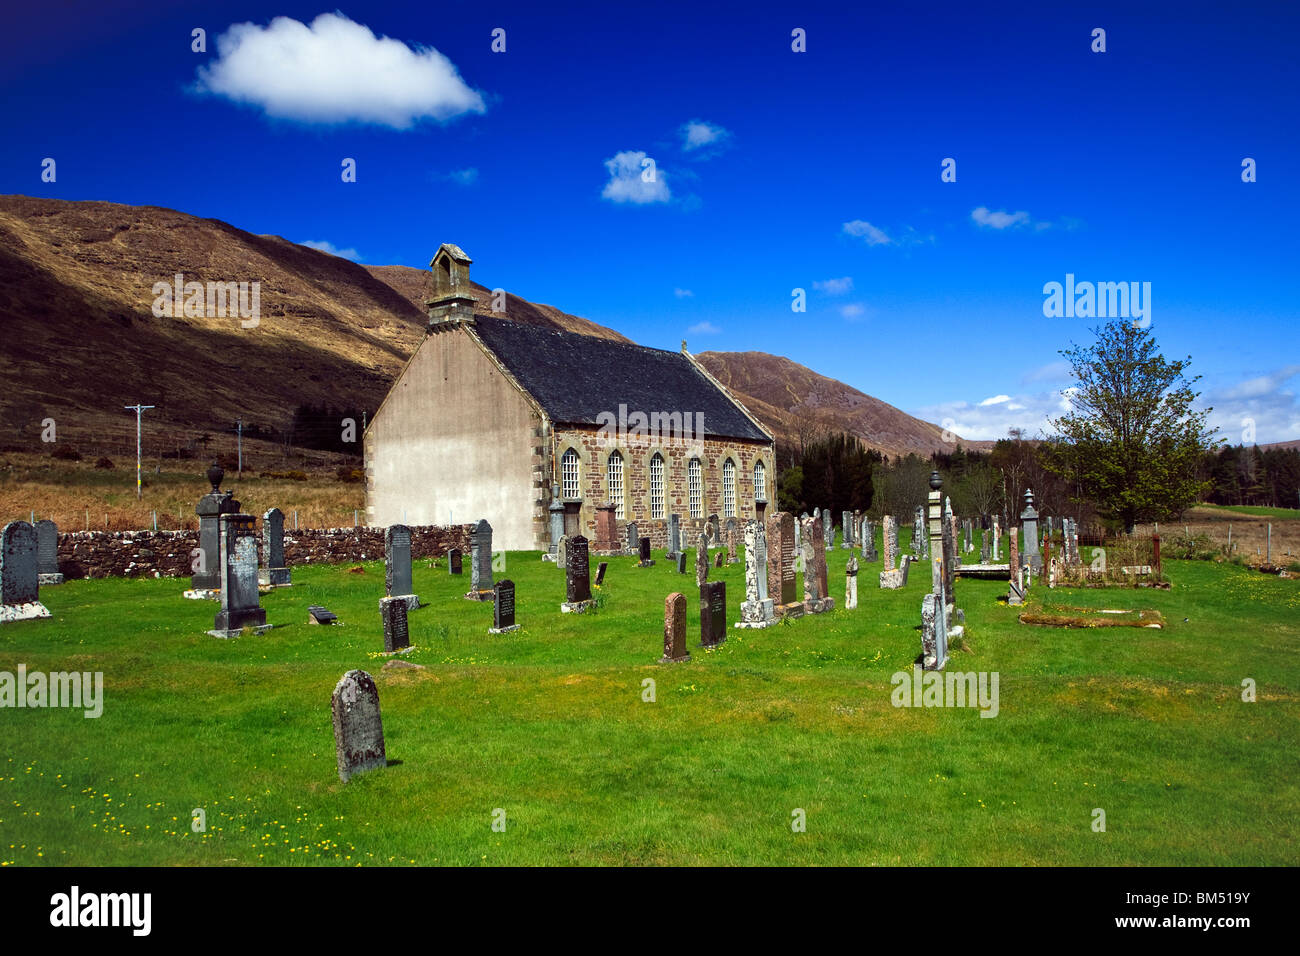 Saint-église et cimetière, Ecosse Wester Ross de la côte ouest de l'Écosse Highlands Grande-bretagne UK 2010 Banque D'Images